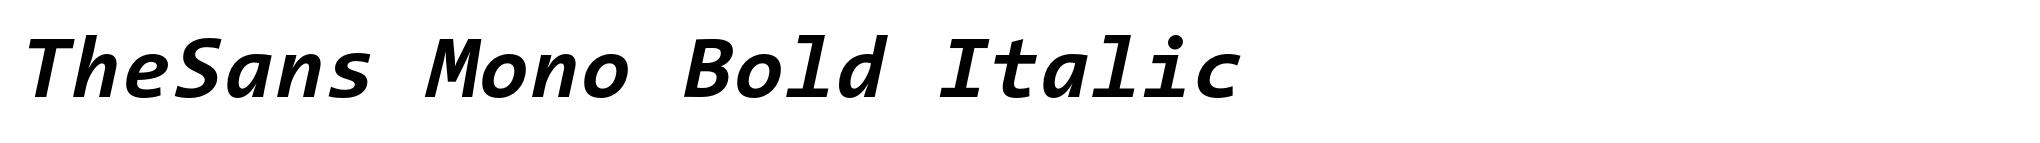 TheSans Mono Bold Italic image